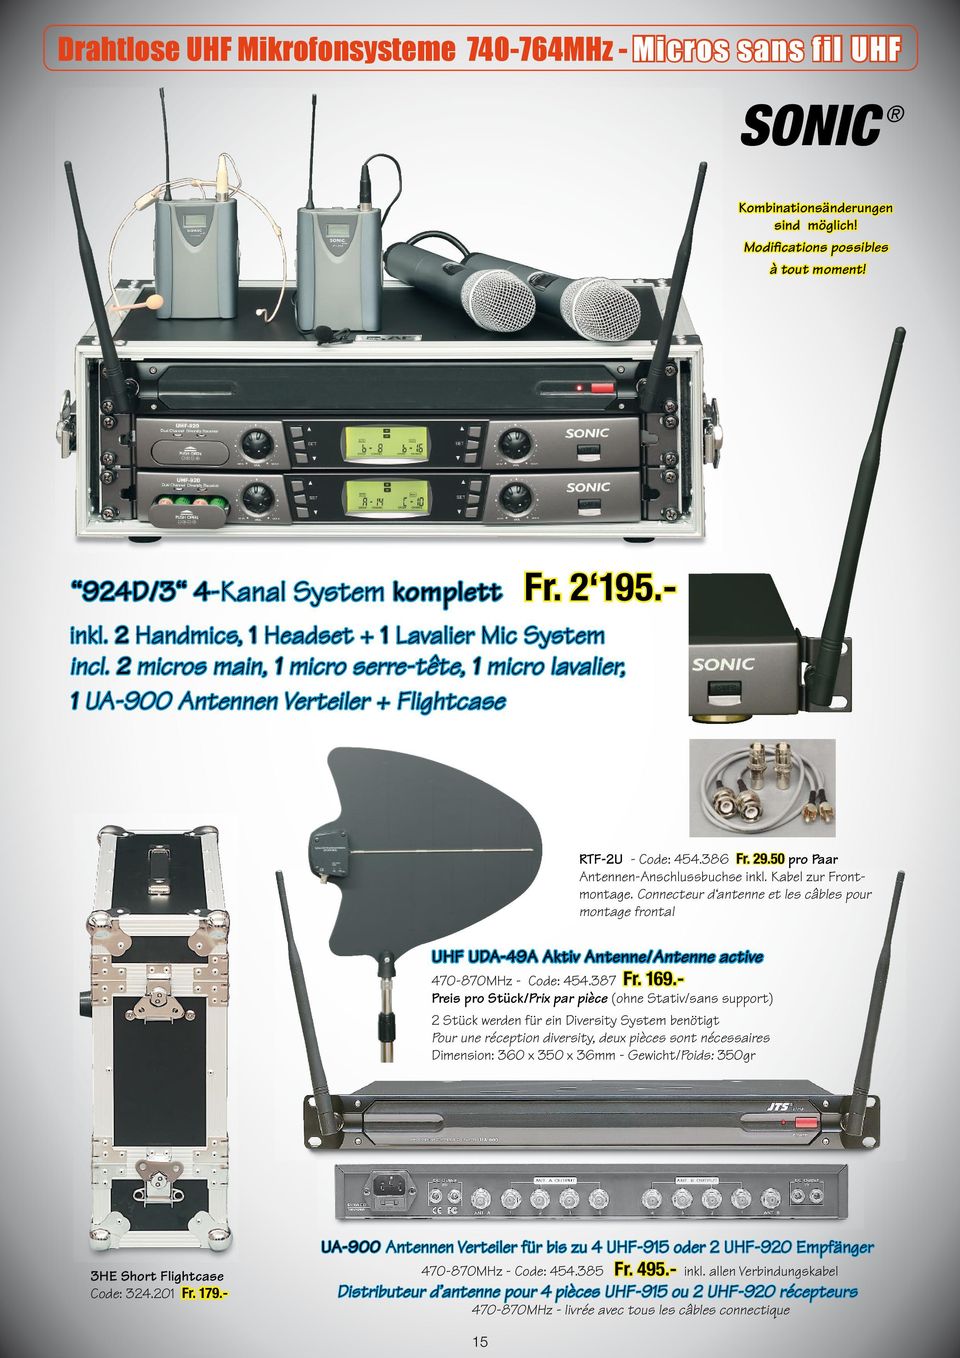 Connecteur d antenne et les câbles pour montage frontal UHF UDA-49A Aktiv Antenne/Antenne active 470-870MHz - Code: 454.387 Fr. 169.